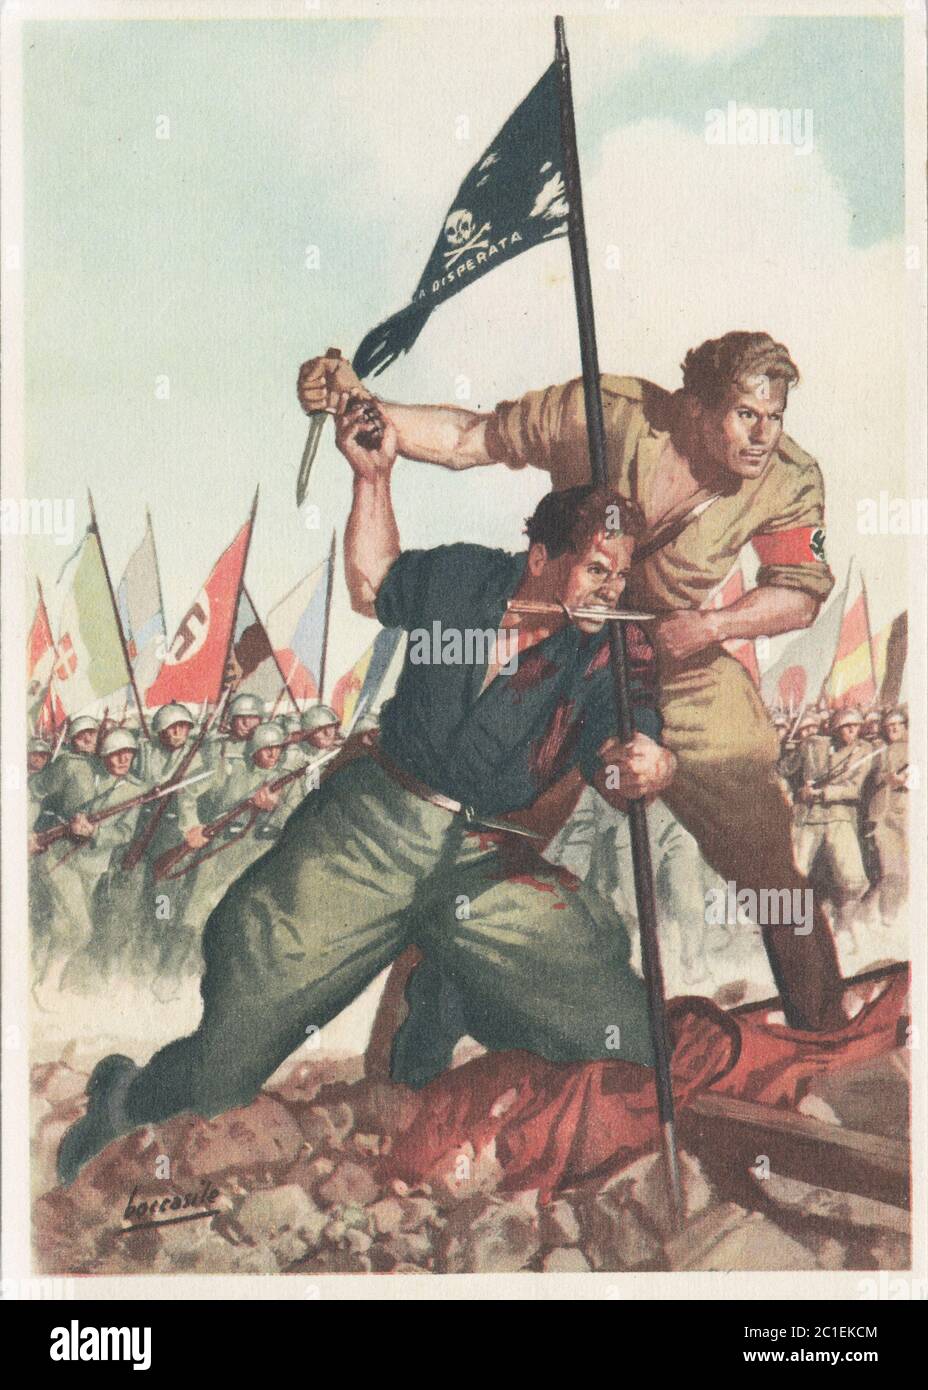 Carta de correo de campo italiana de la Hermandad de armas de Alemania-Italia. 1941 Foto de stock